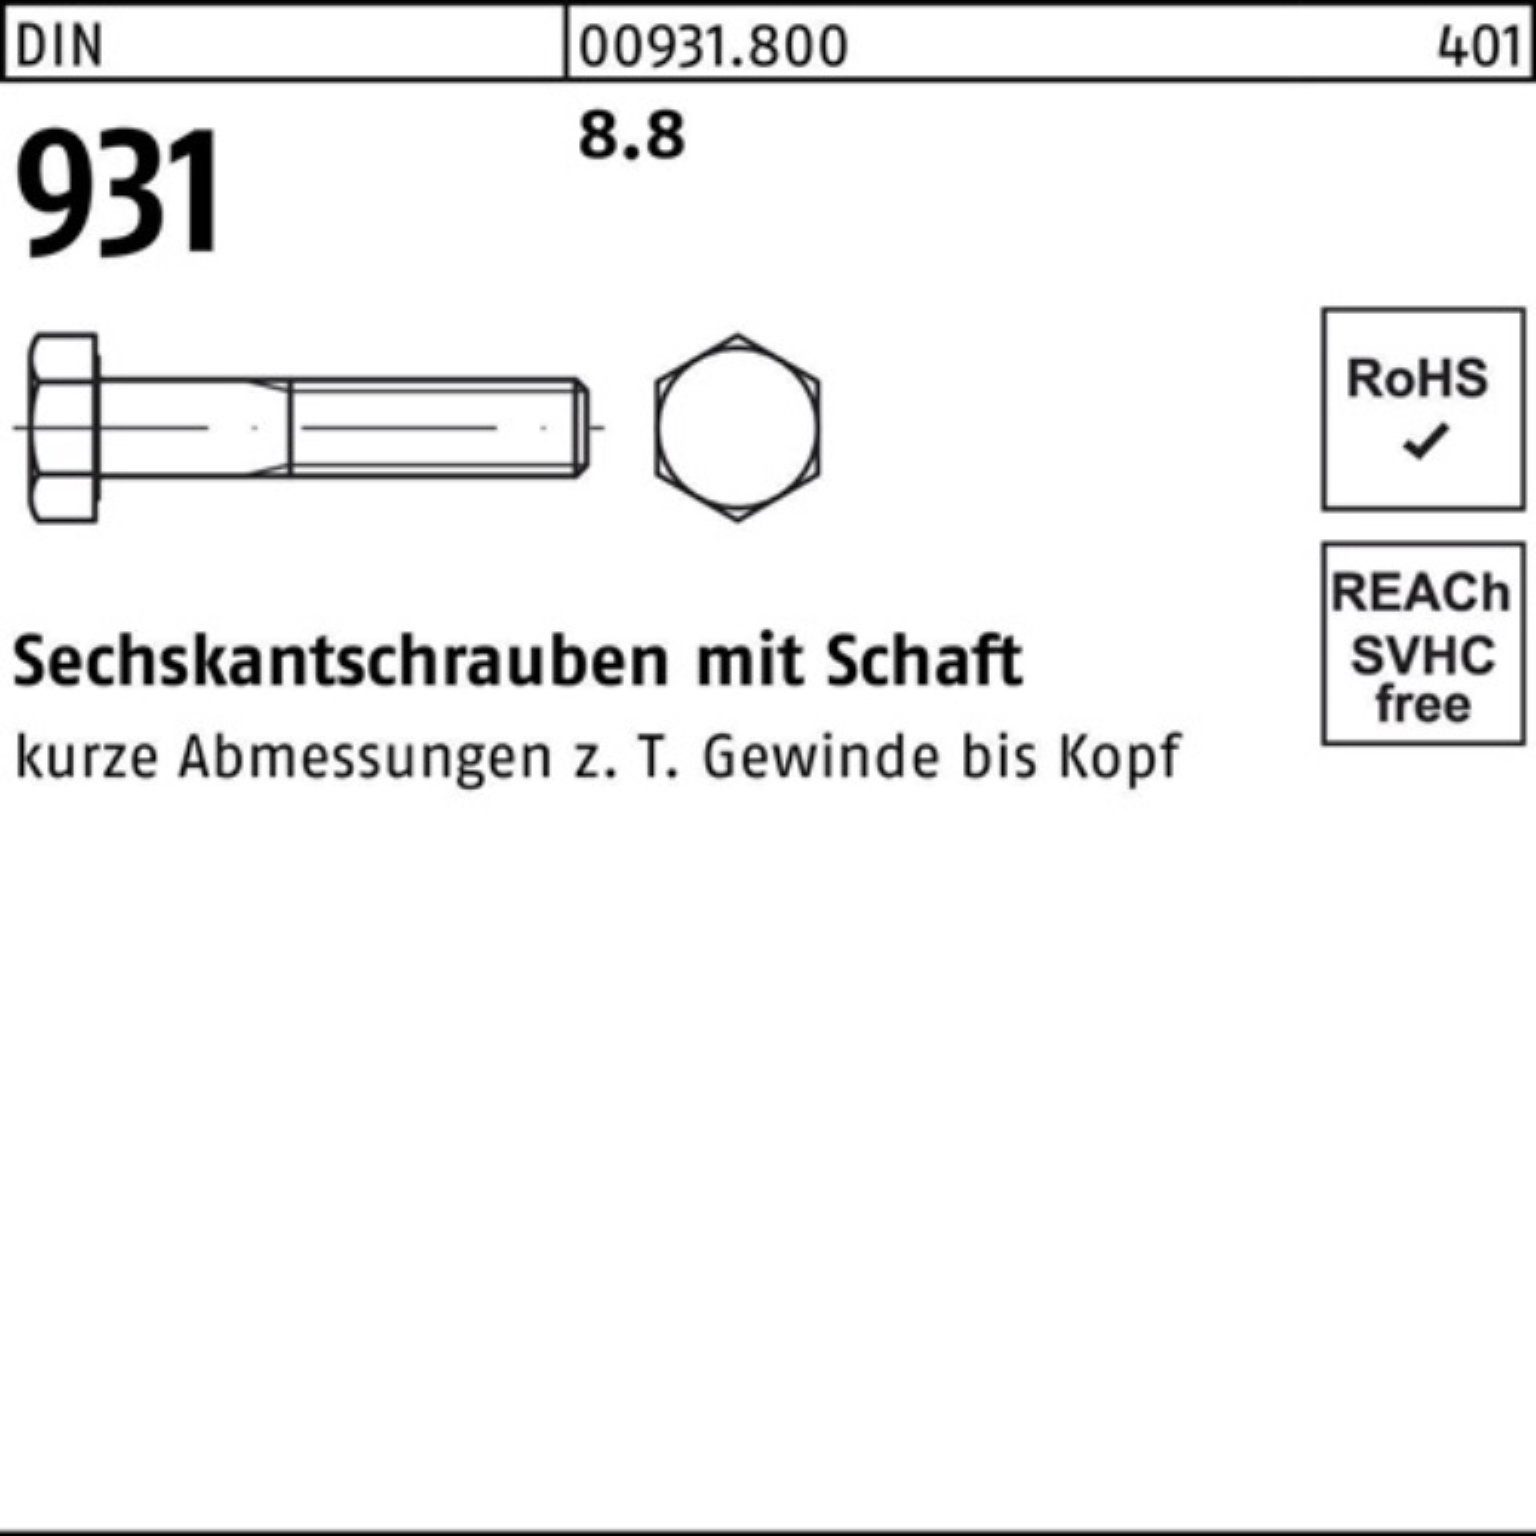 Reyher Sechskantschraube 100er Pack Sechskantschraube 8.8 Schaft 931 DIN 1 200 DIN Stück M42x